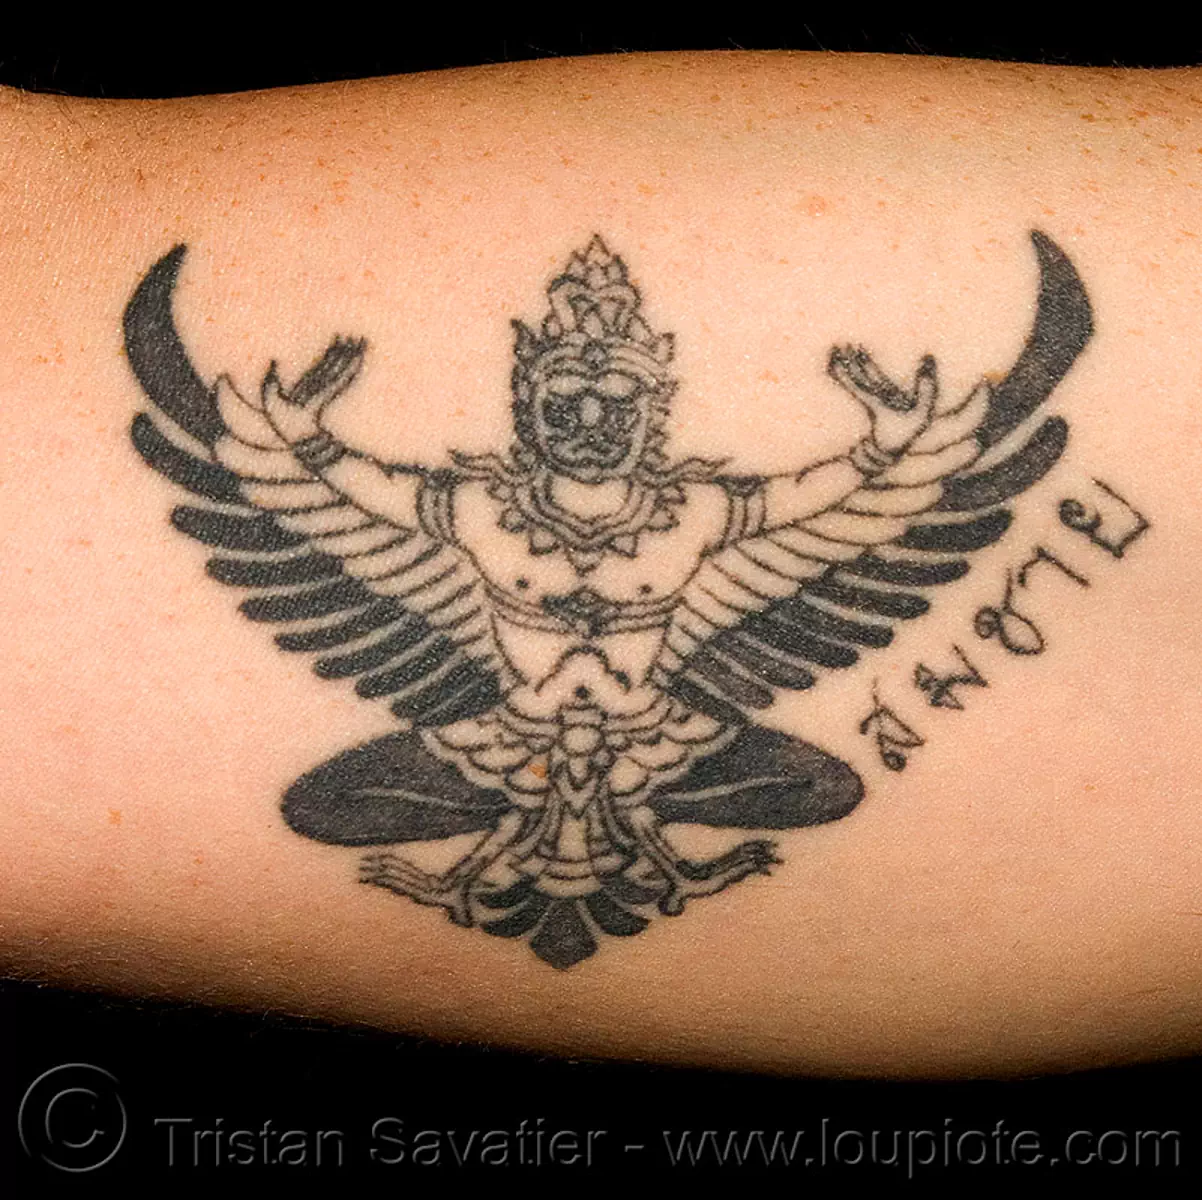 รูปครุฑ รอยสัก - garuda tattoo - thai man-bird god, arm tattoo, garuda tattoo, krut, tattooed, tattoos, thai, thailand, รอยสัก, รูปครุฑ